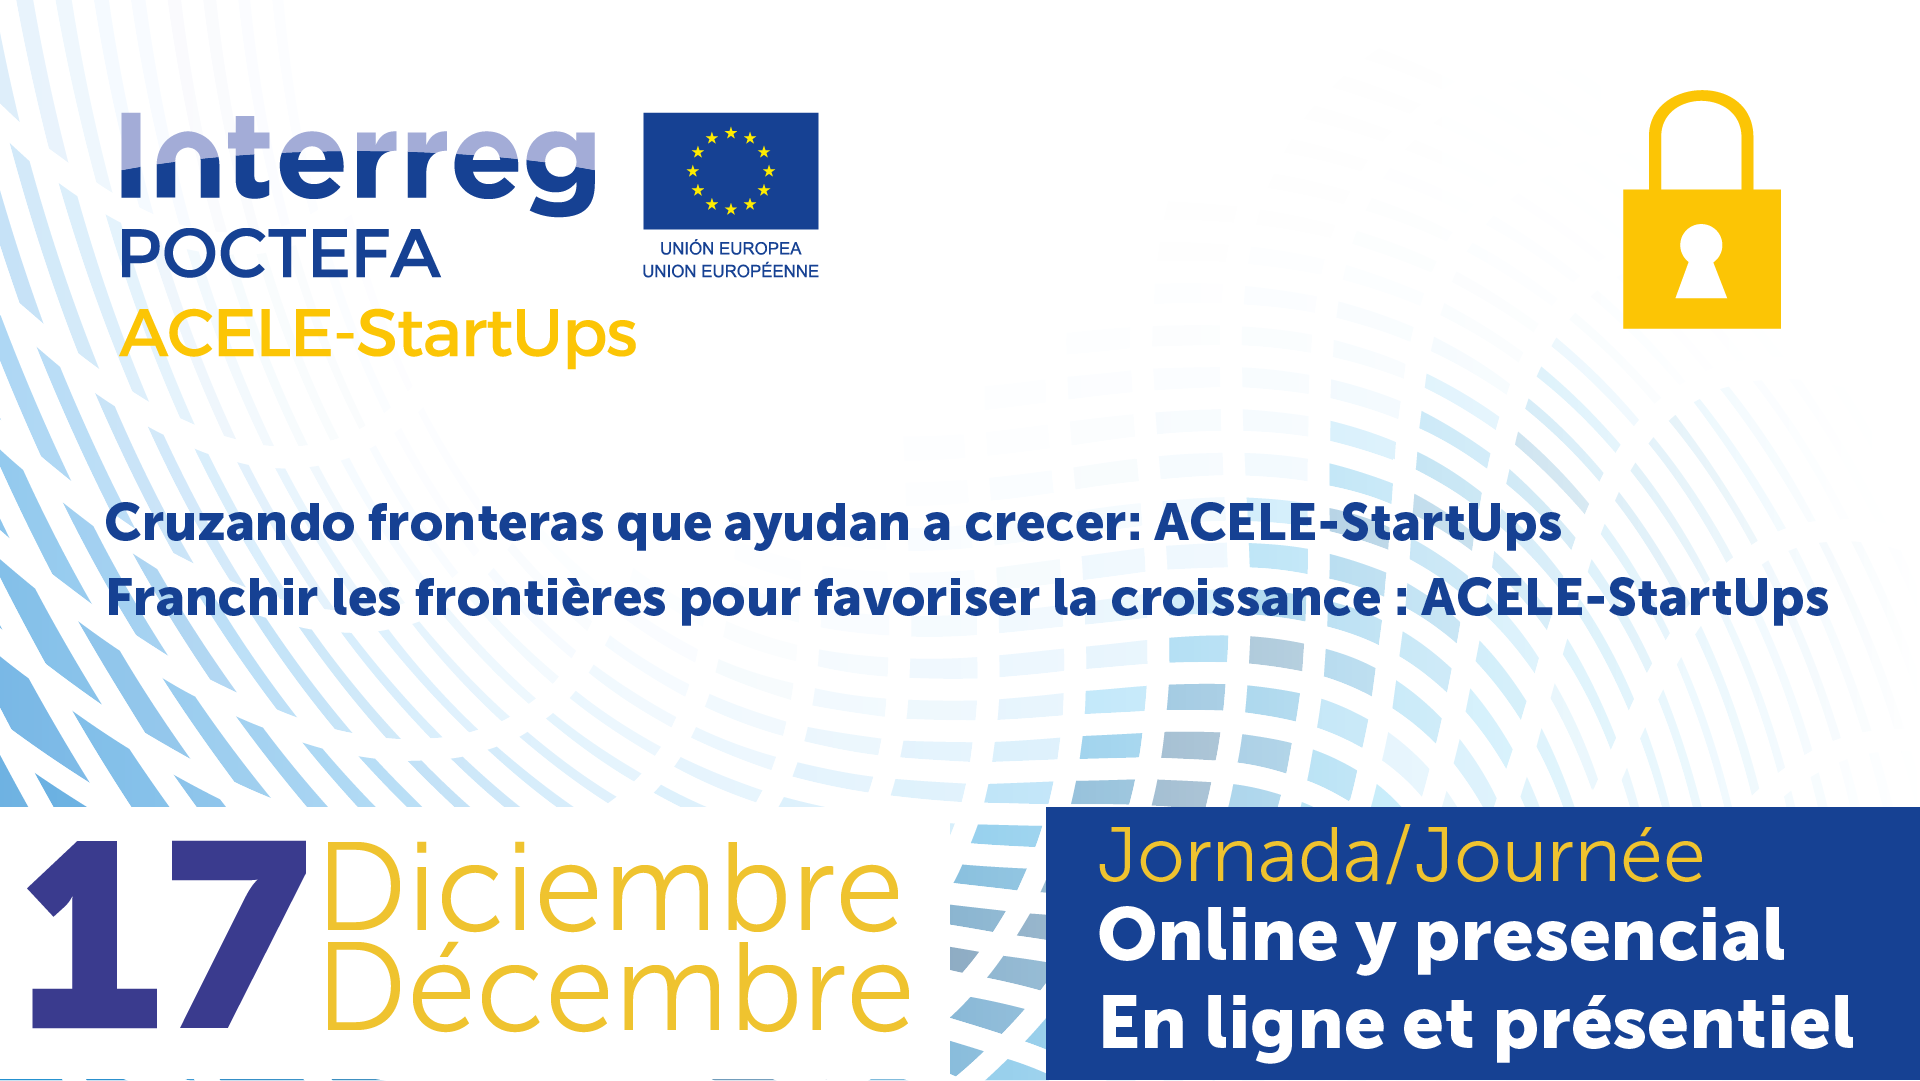 Jornada online y presencial en Zaragoza "Cruzando fronteras que ayudan a crecer: ACELE-StartUps"